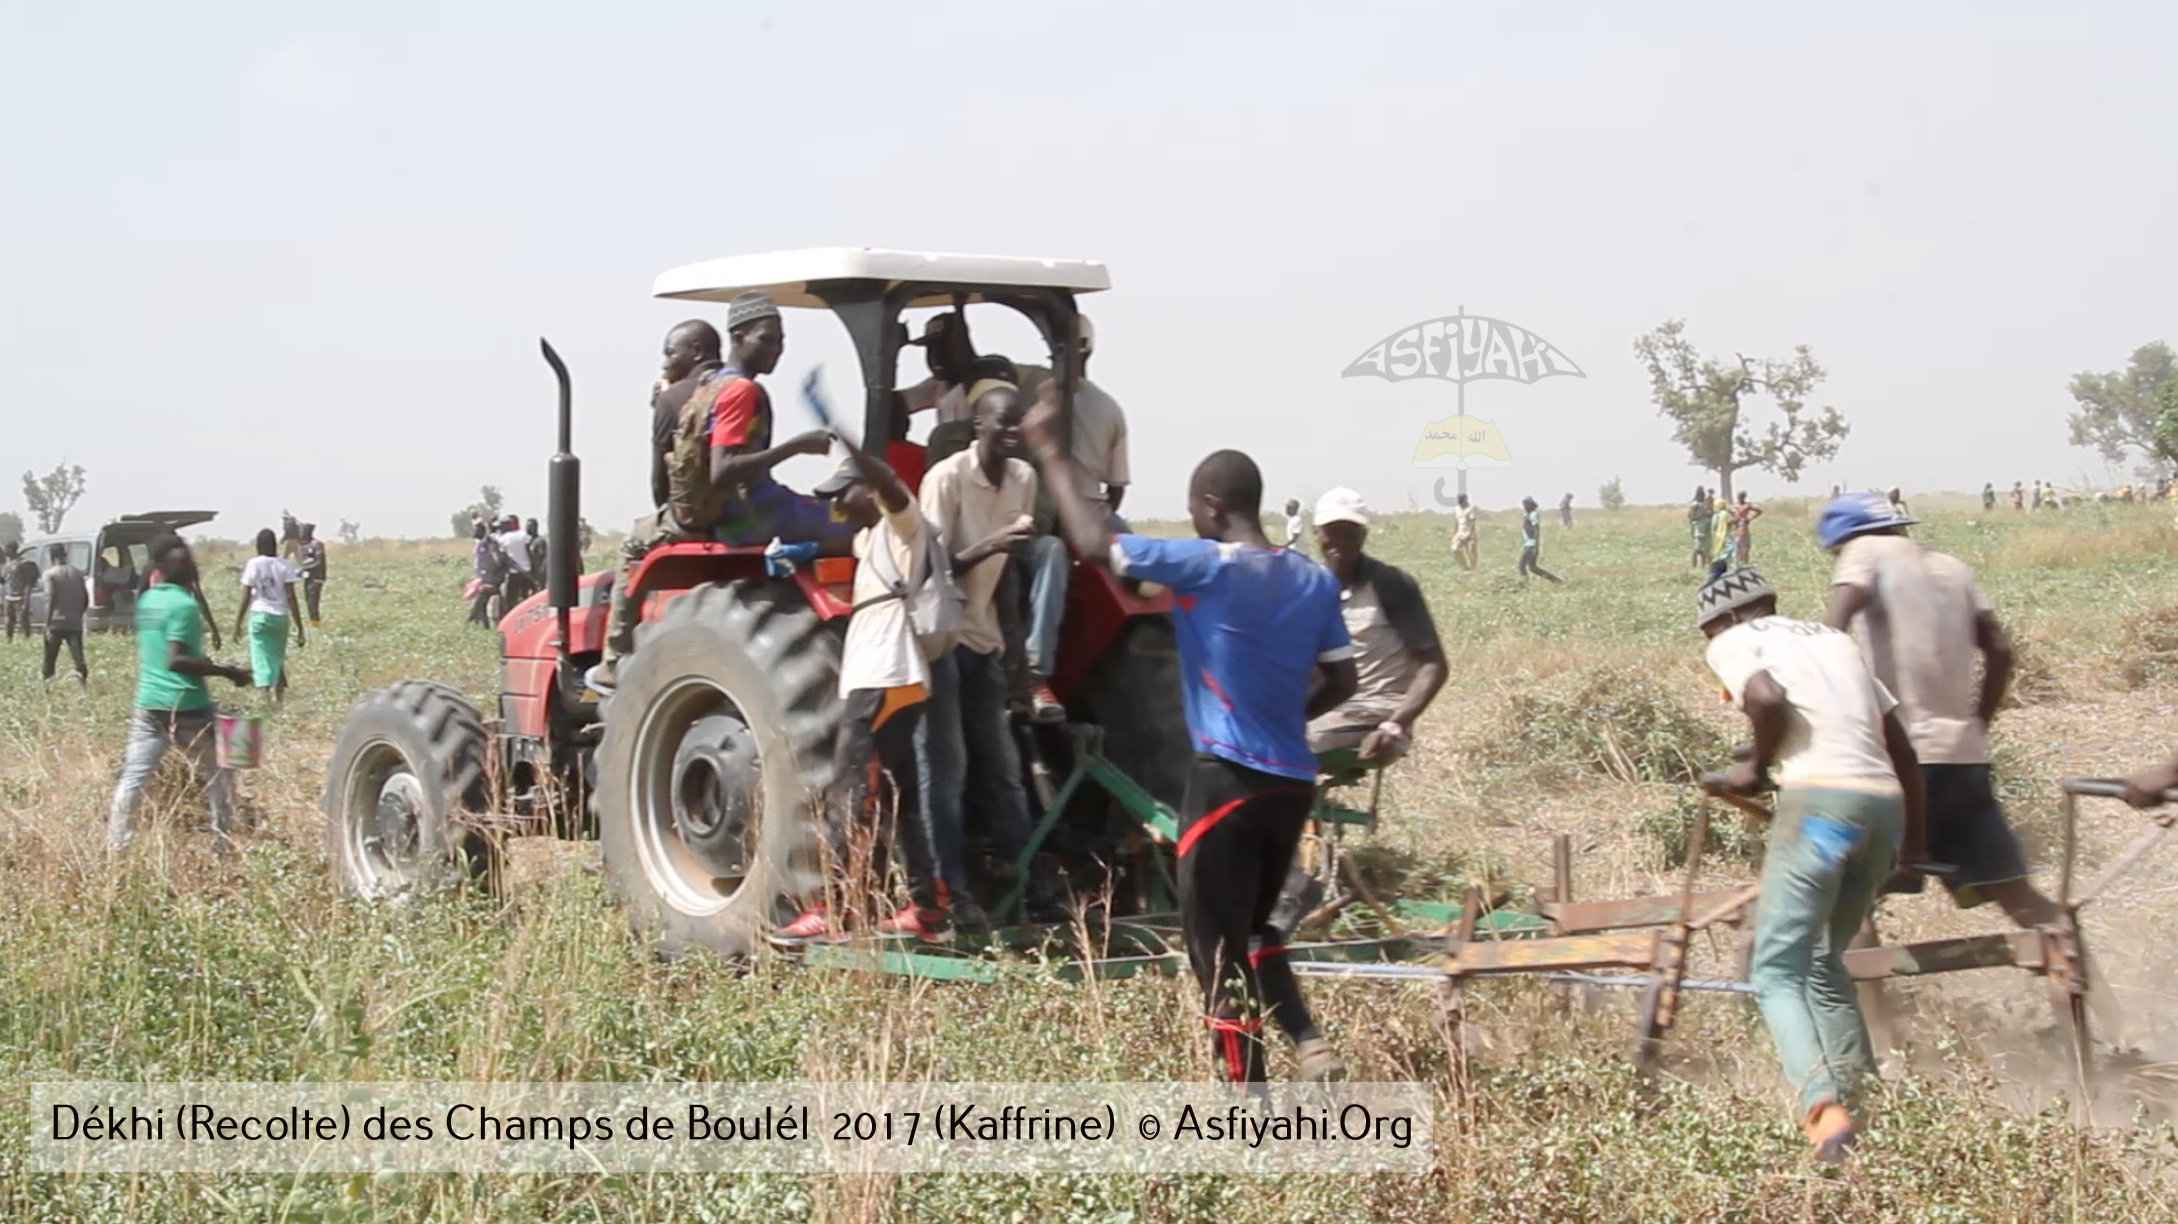 PHOTOS - Regardez les Images de la Récolte 2017 des Champs de Boulél (Kaffrine), cultivés par Serigne Abdoul Aziz SY Al Amine